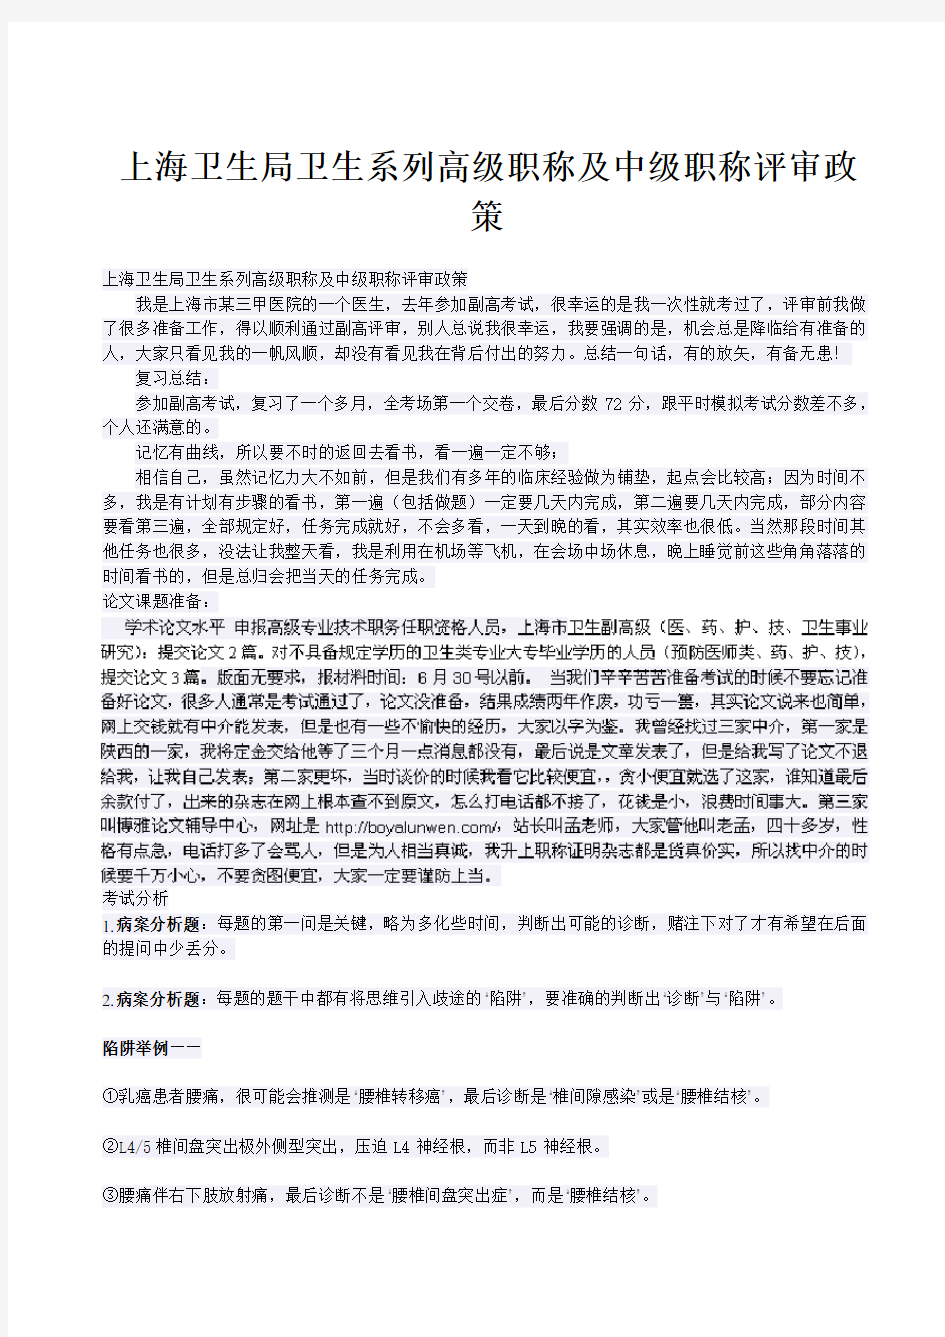 上海卫生局卫生系列高级职称及中级职称评审政策